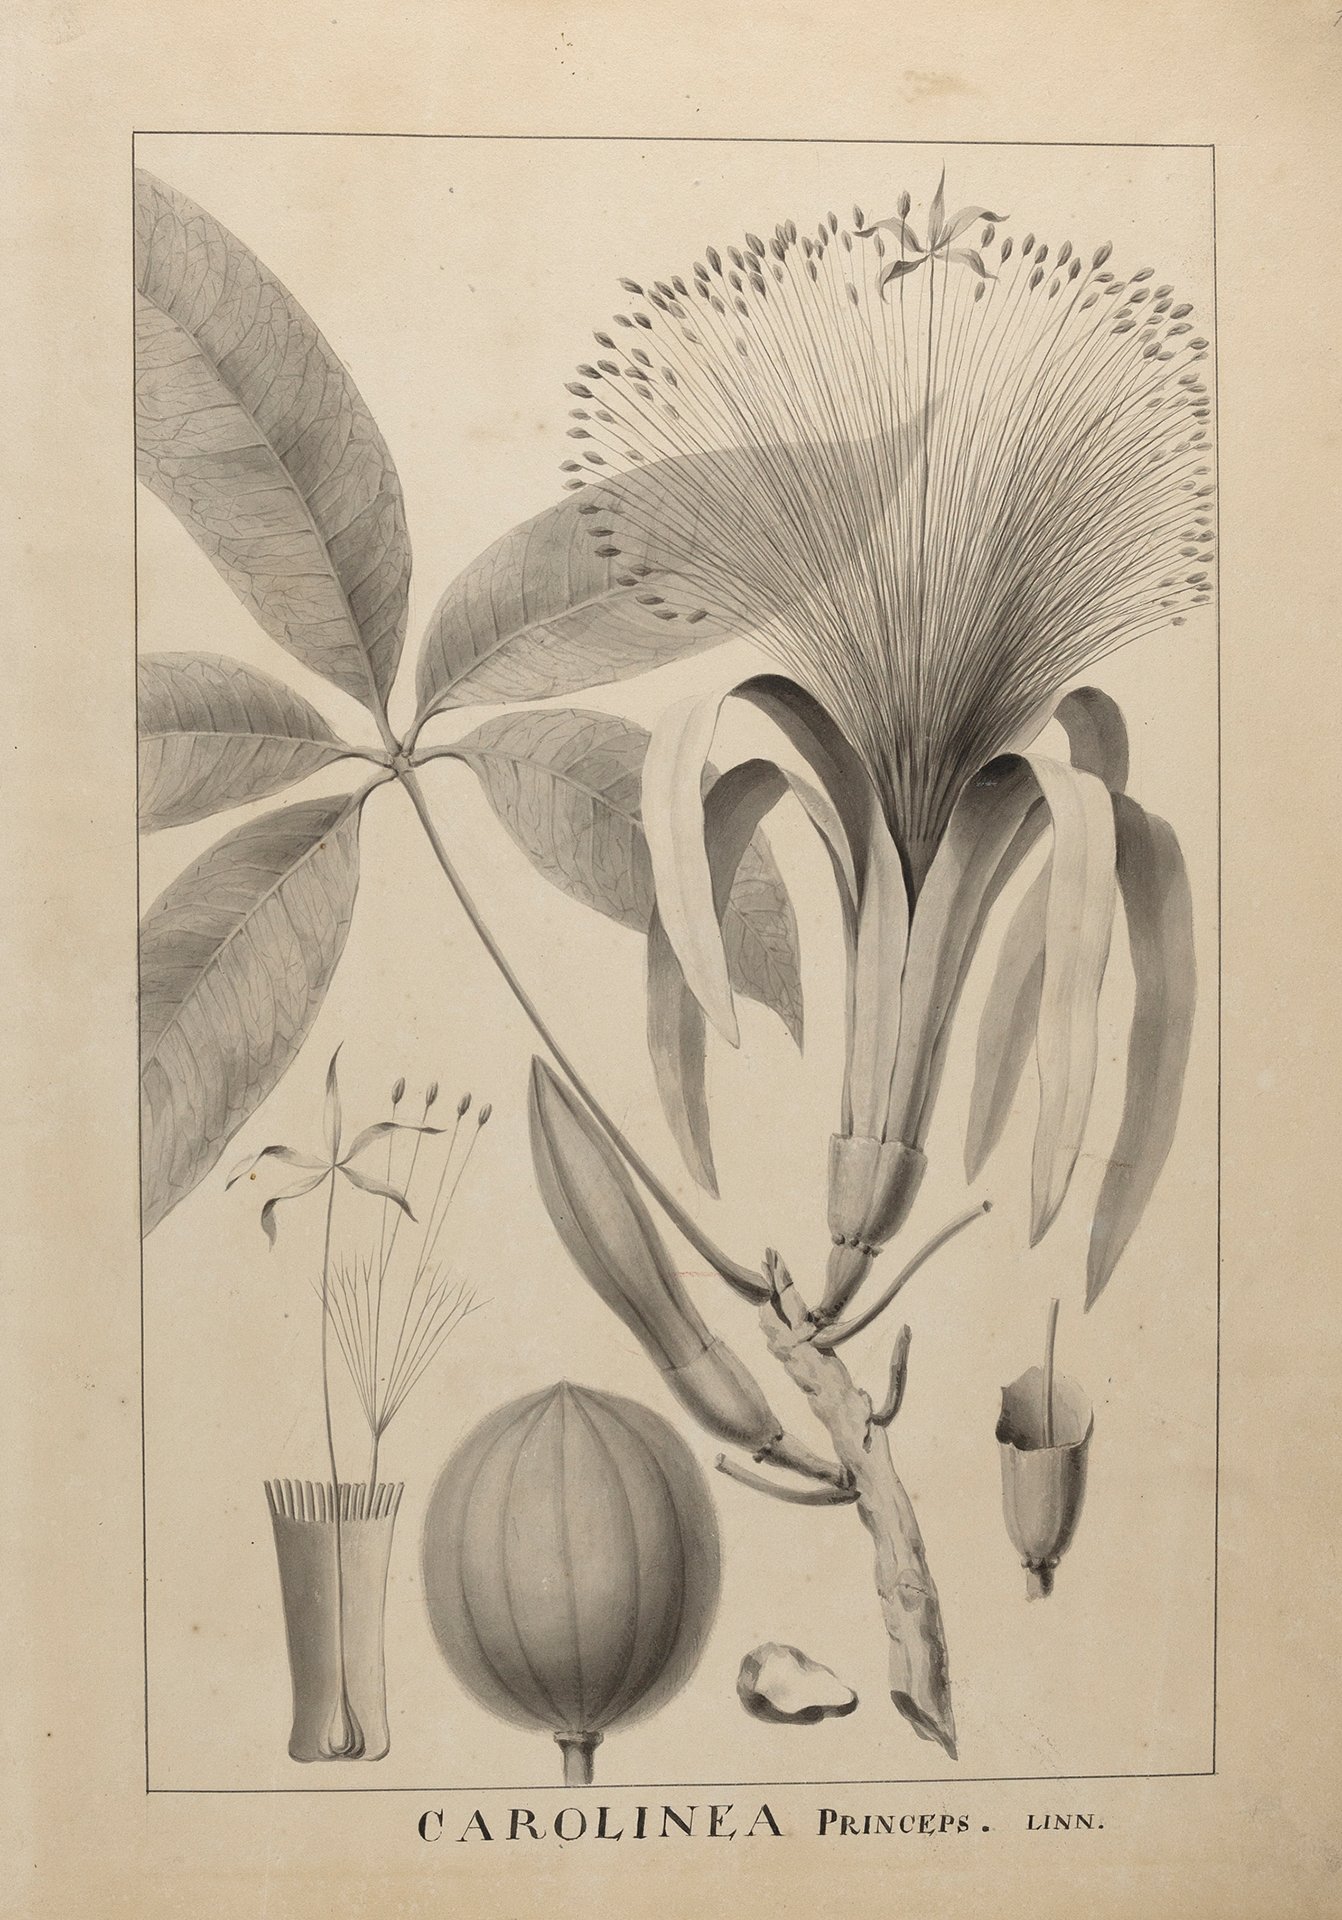 Abbildung der Pflanzenstudie "Carolinea Princeps" aus dem Jahr 1775.